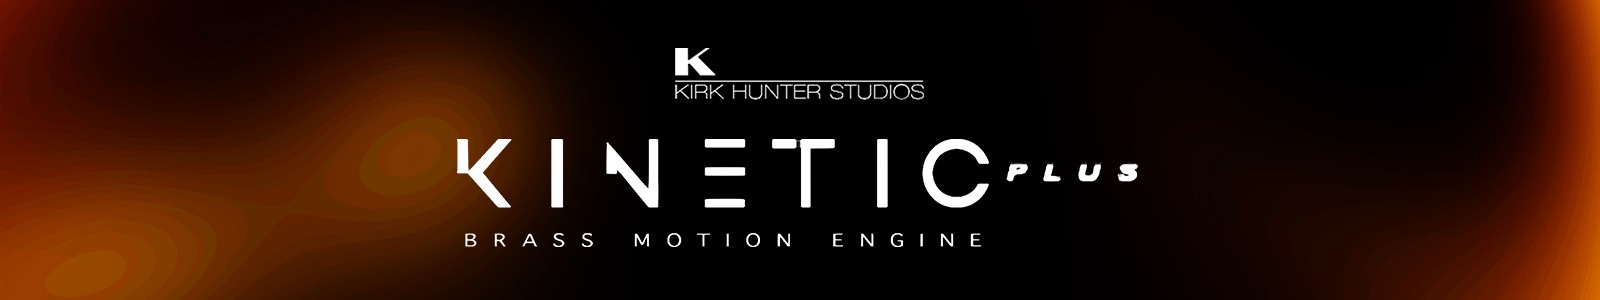 Kinetic Brass Plus by Kirk Hunter Studios